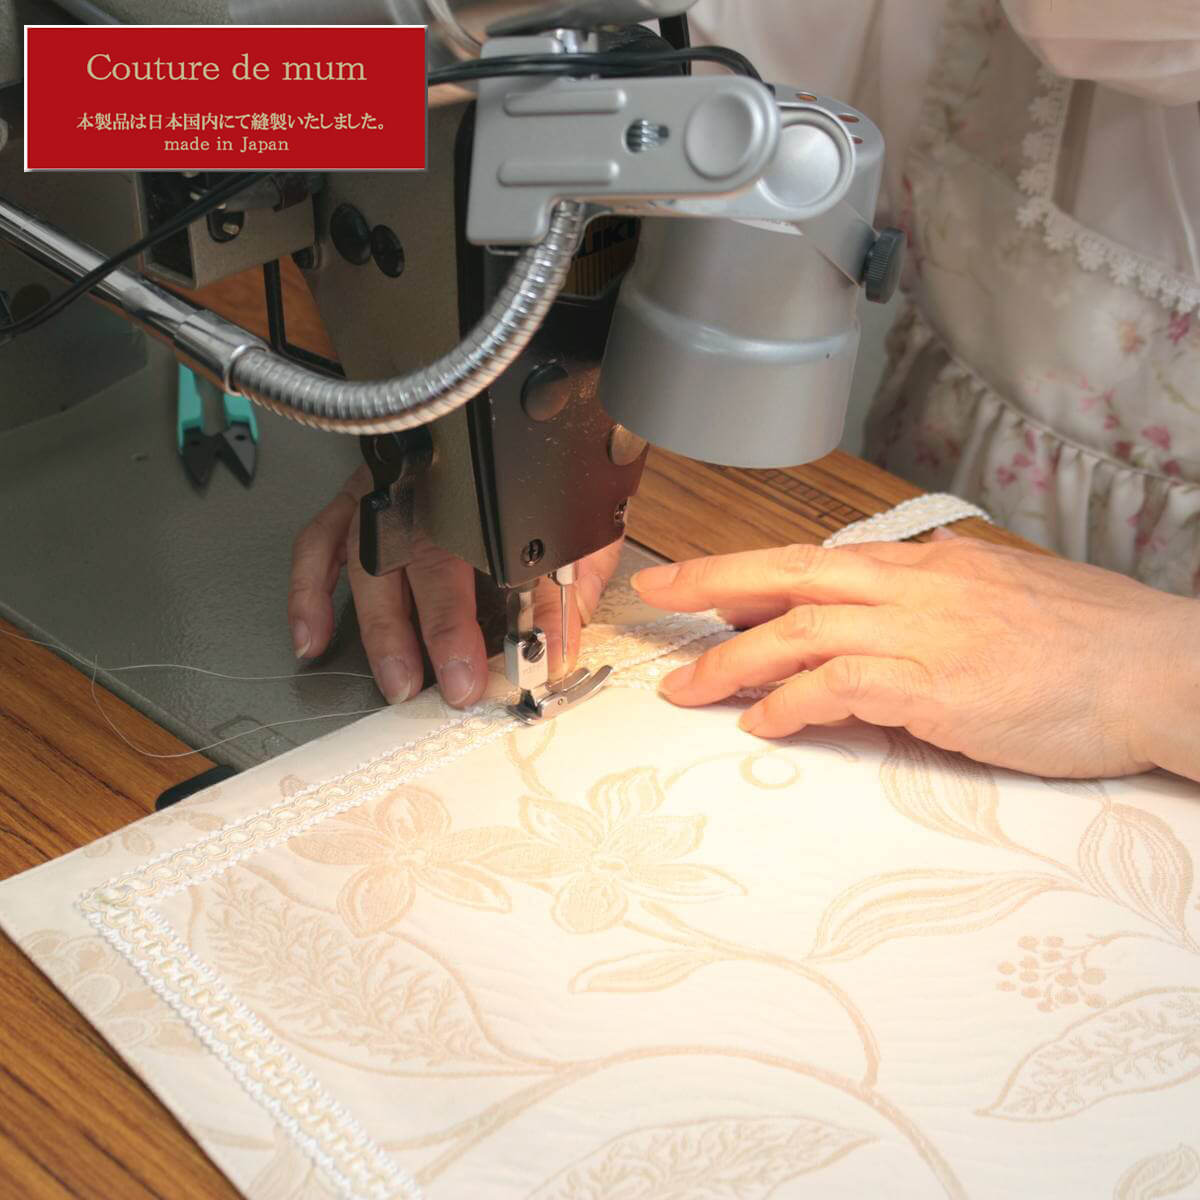 イタリー製ジャカード織シリーズは一枚ごと丁寧に仕上げています。